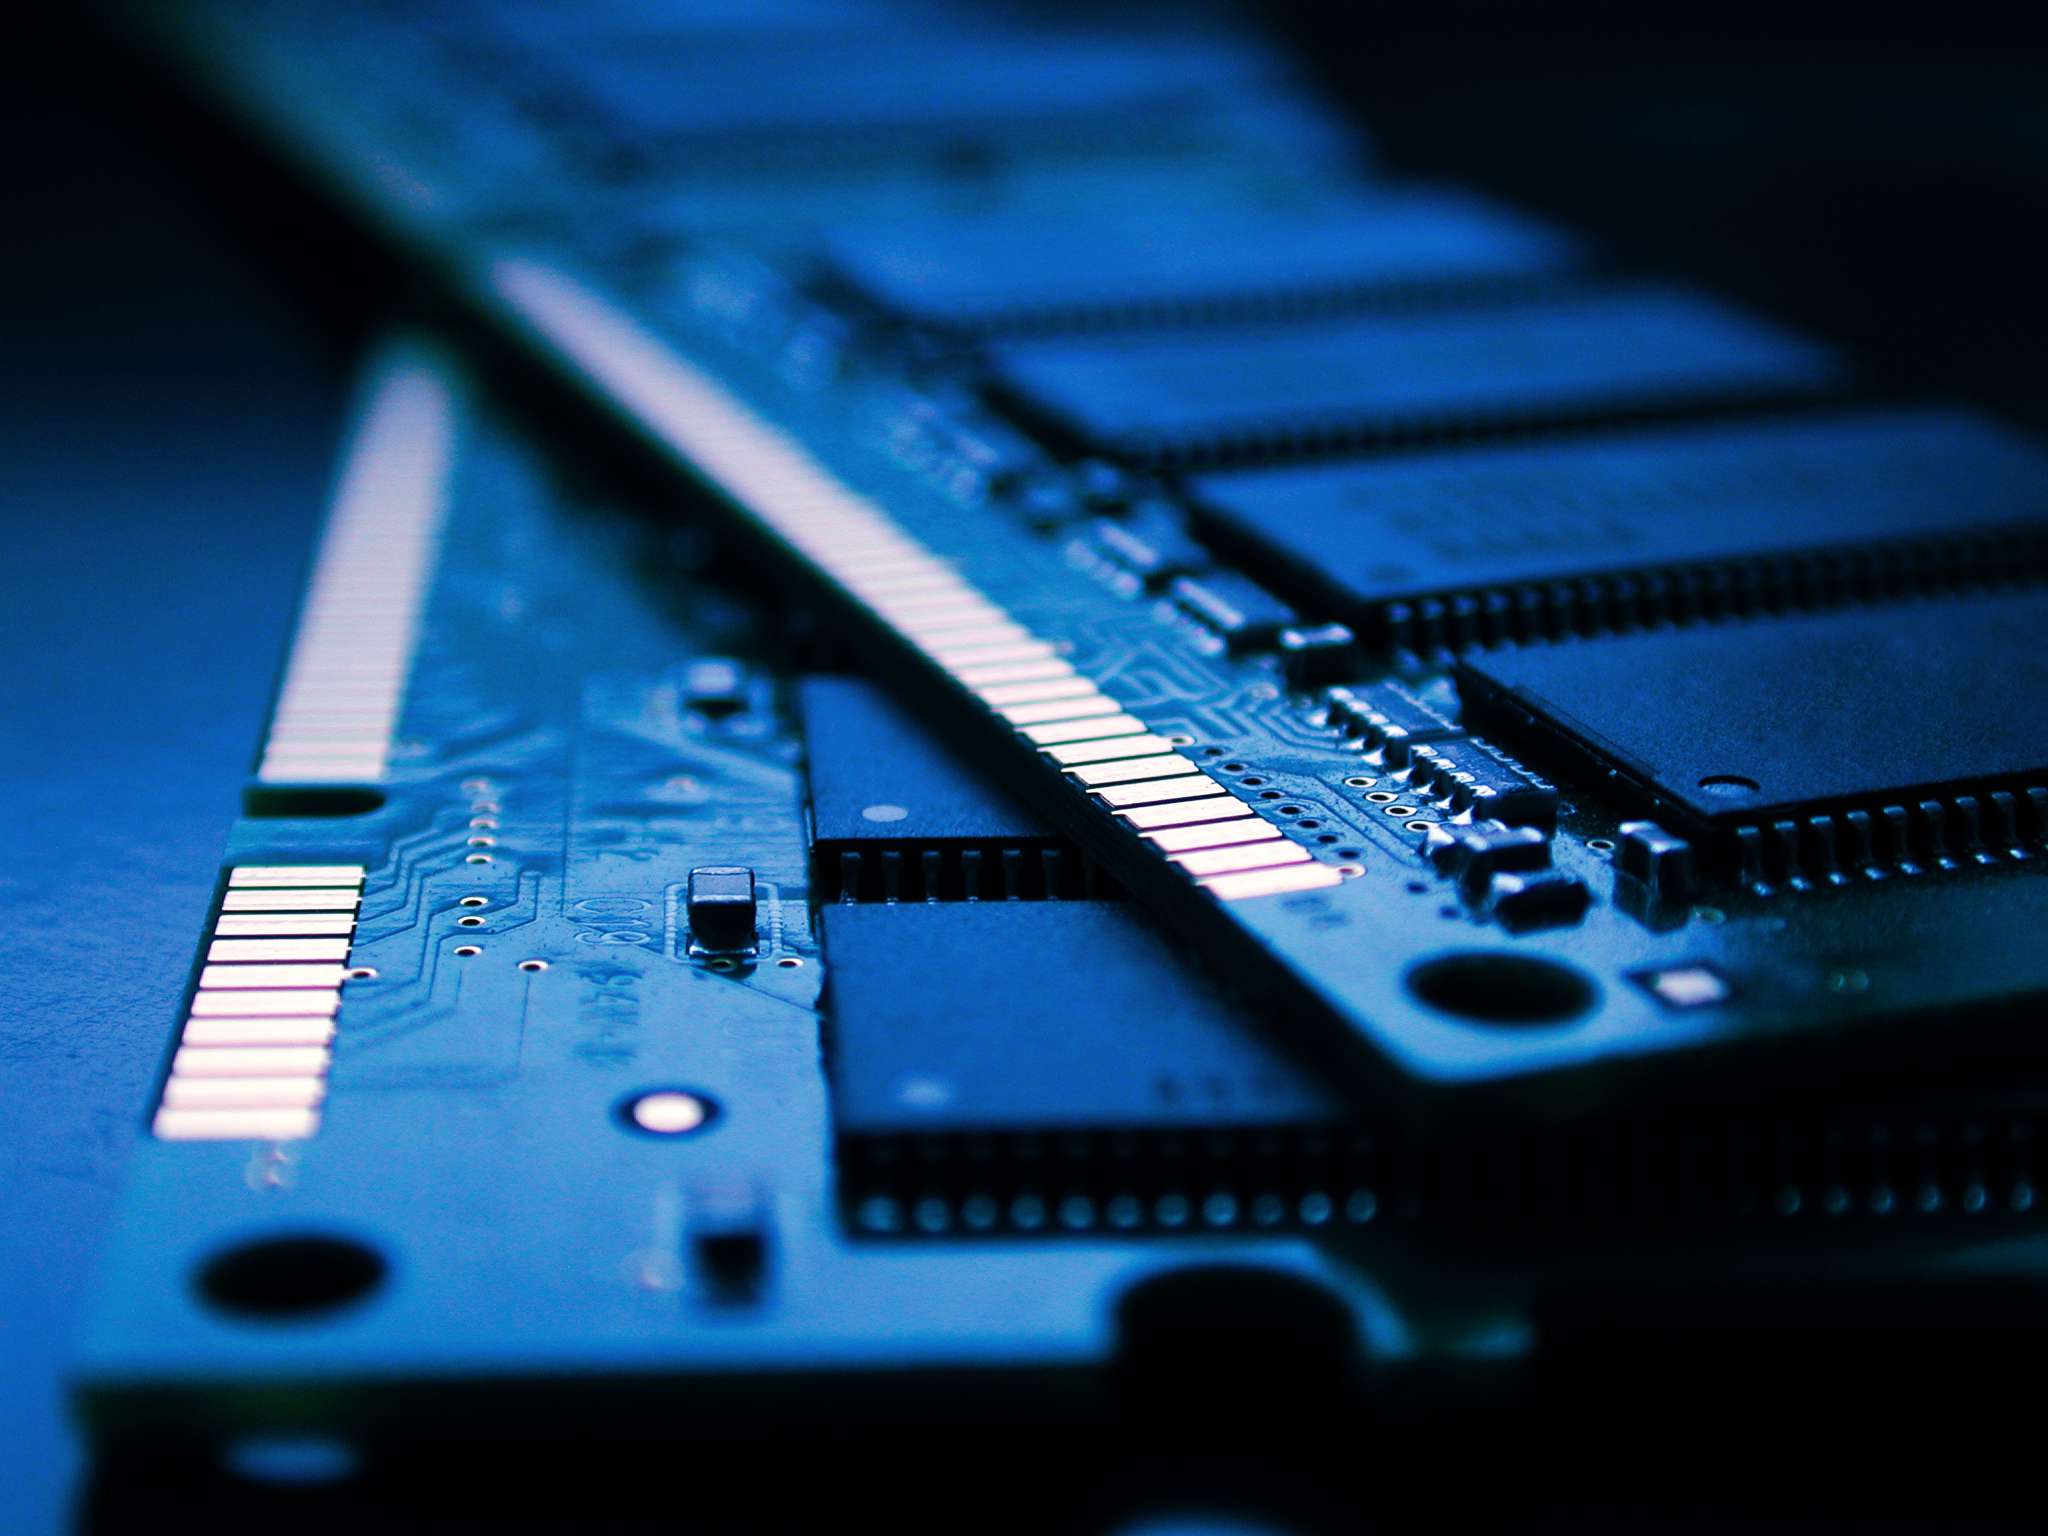 Een close-up van twee stokken computer-RAM onder een zacht blauw licht